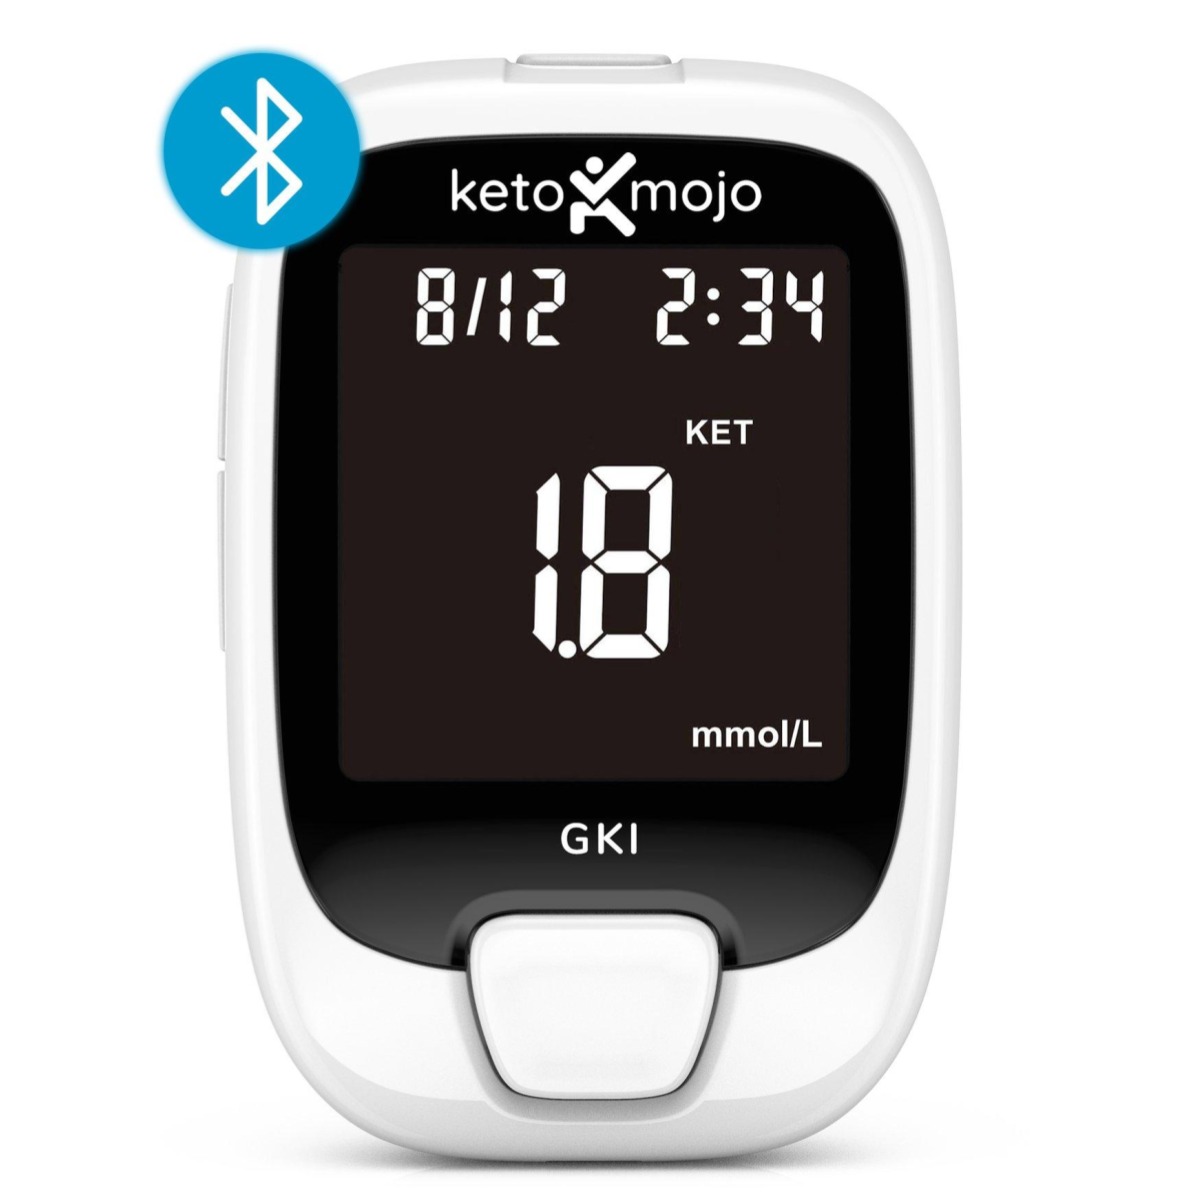 Keto-Mojo GKI-Bluetooth Blood Glucose & Ketone Meter - BASIC STARTER KIT